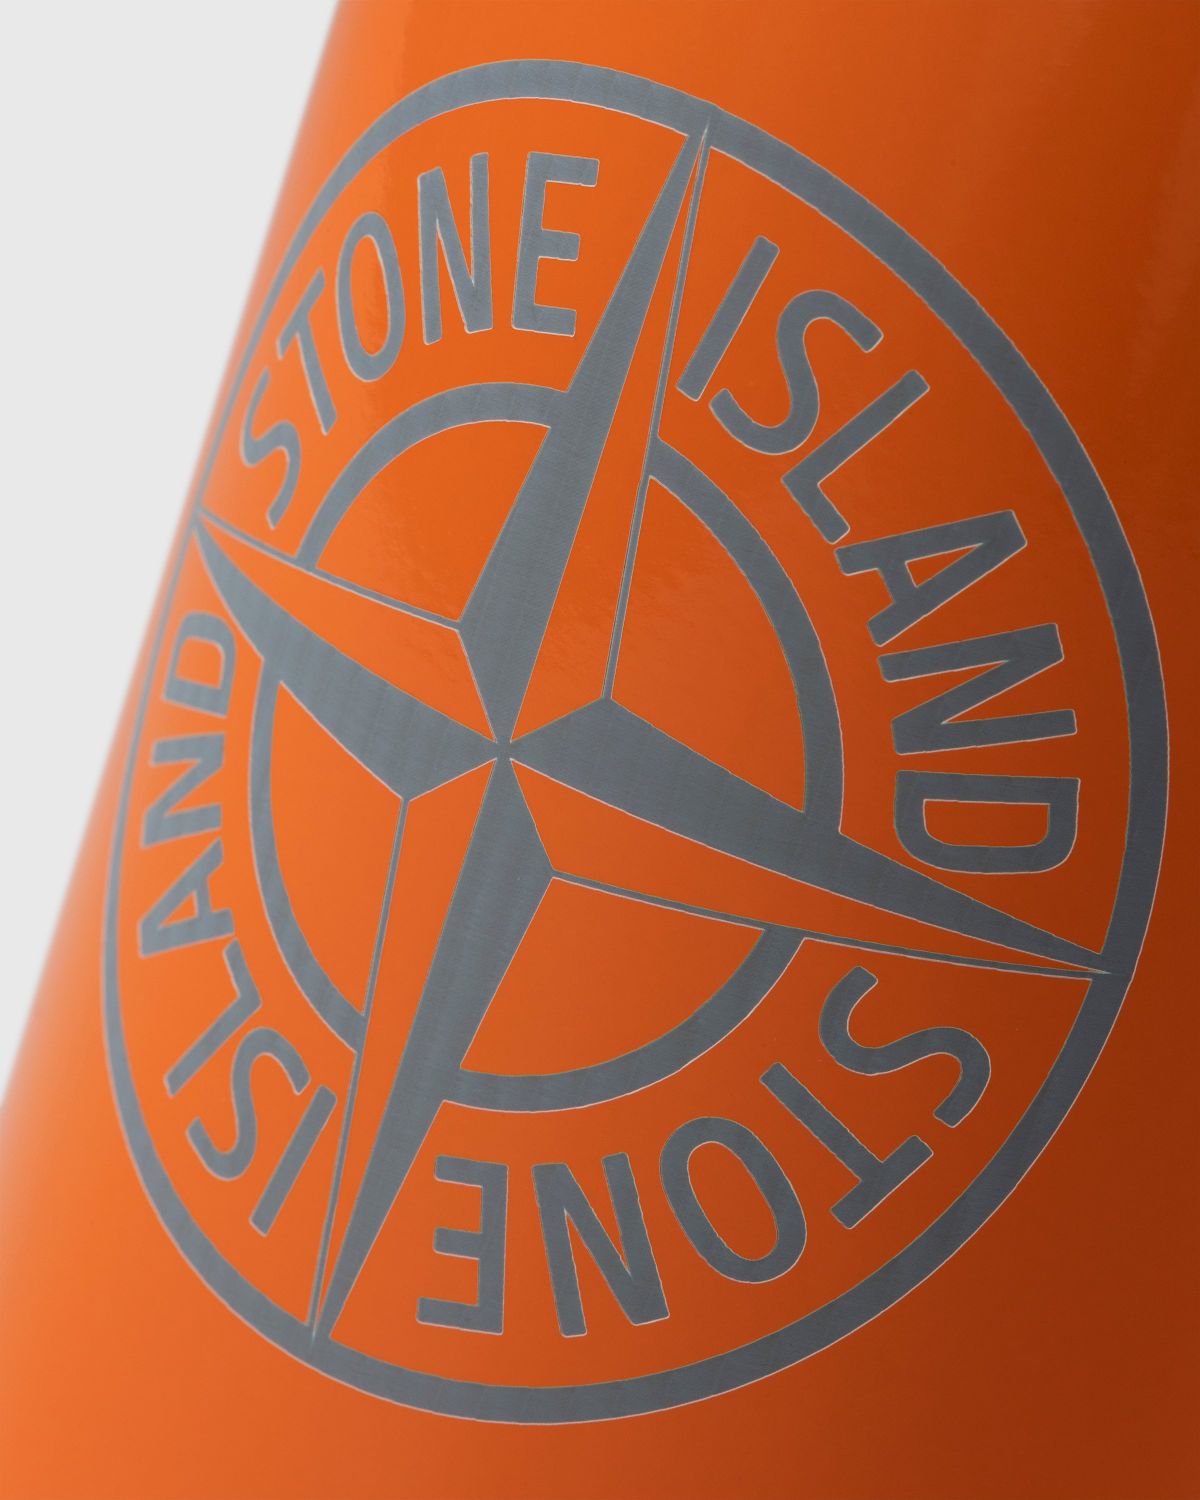 Stone Island – 97069 Clima Bottle Orange - Bottles & Bowls - Orange - Image 6